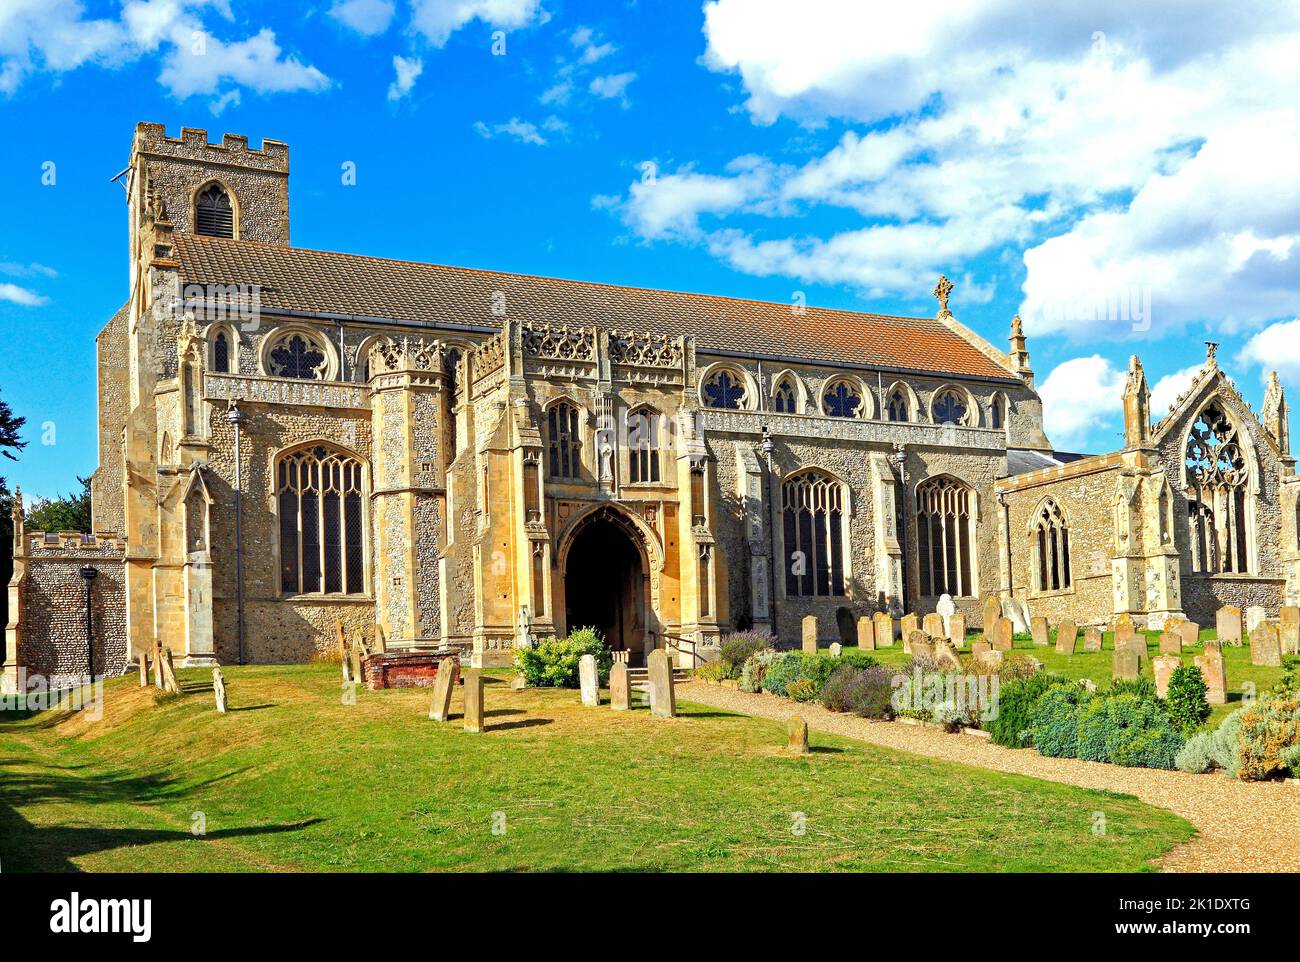 CLEY à côté de la mer, Norfolk, église paroissiale médiévale, Angleterre, Royaume-Uni Banque D'Images